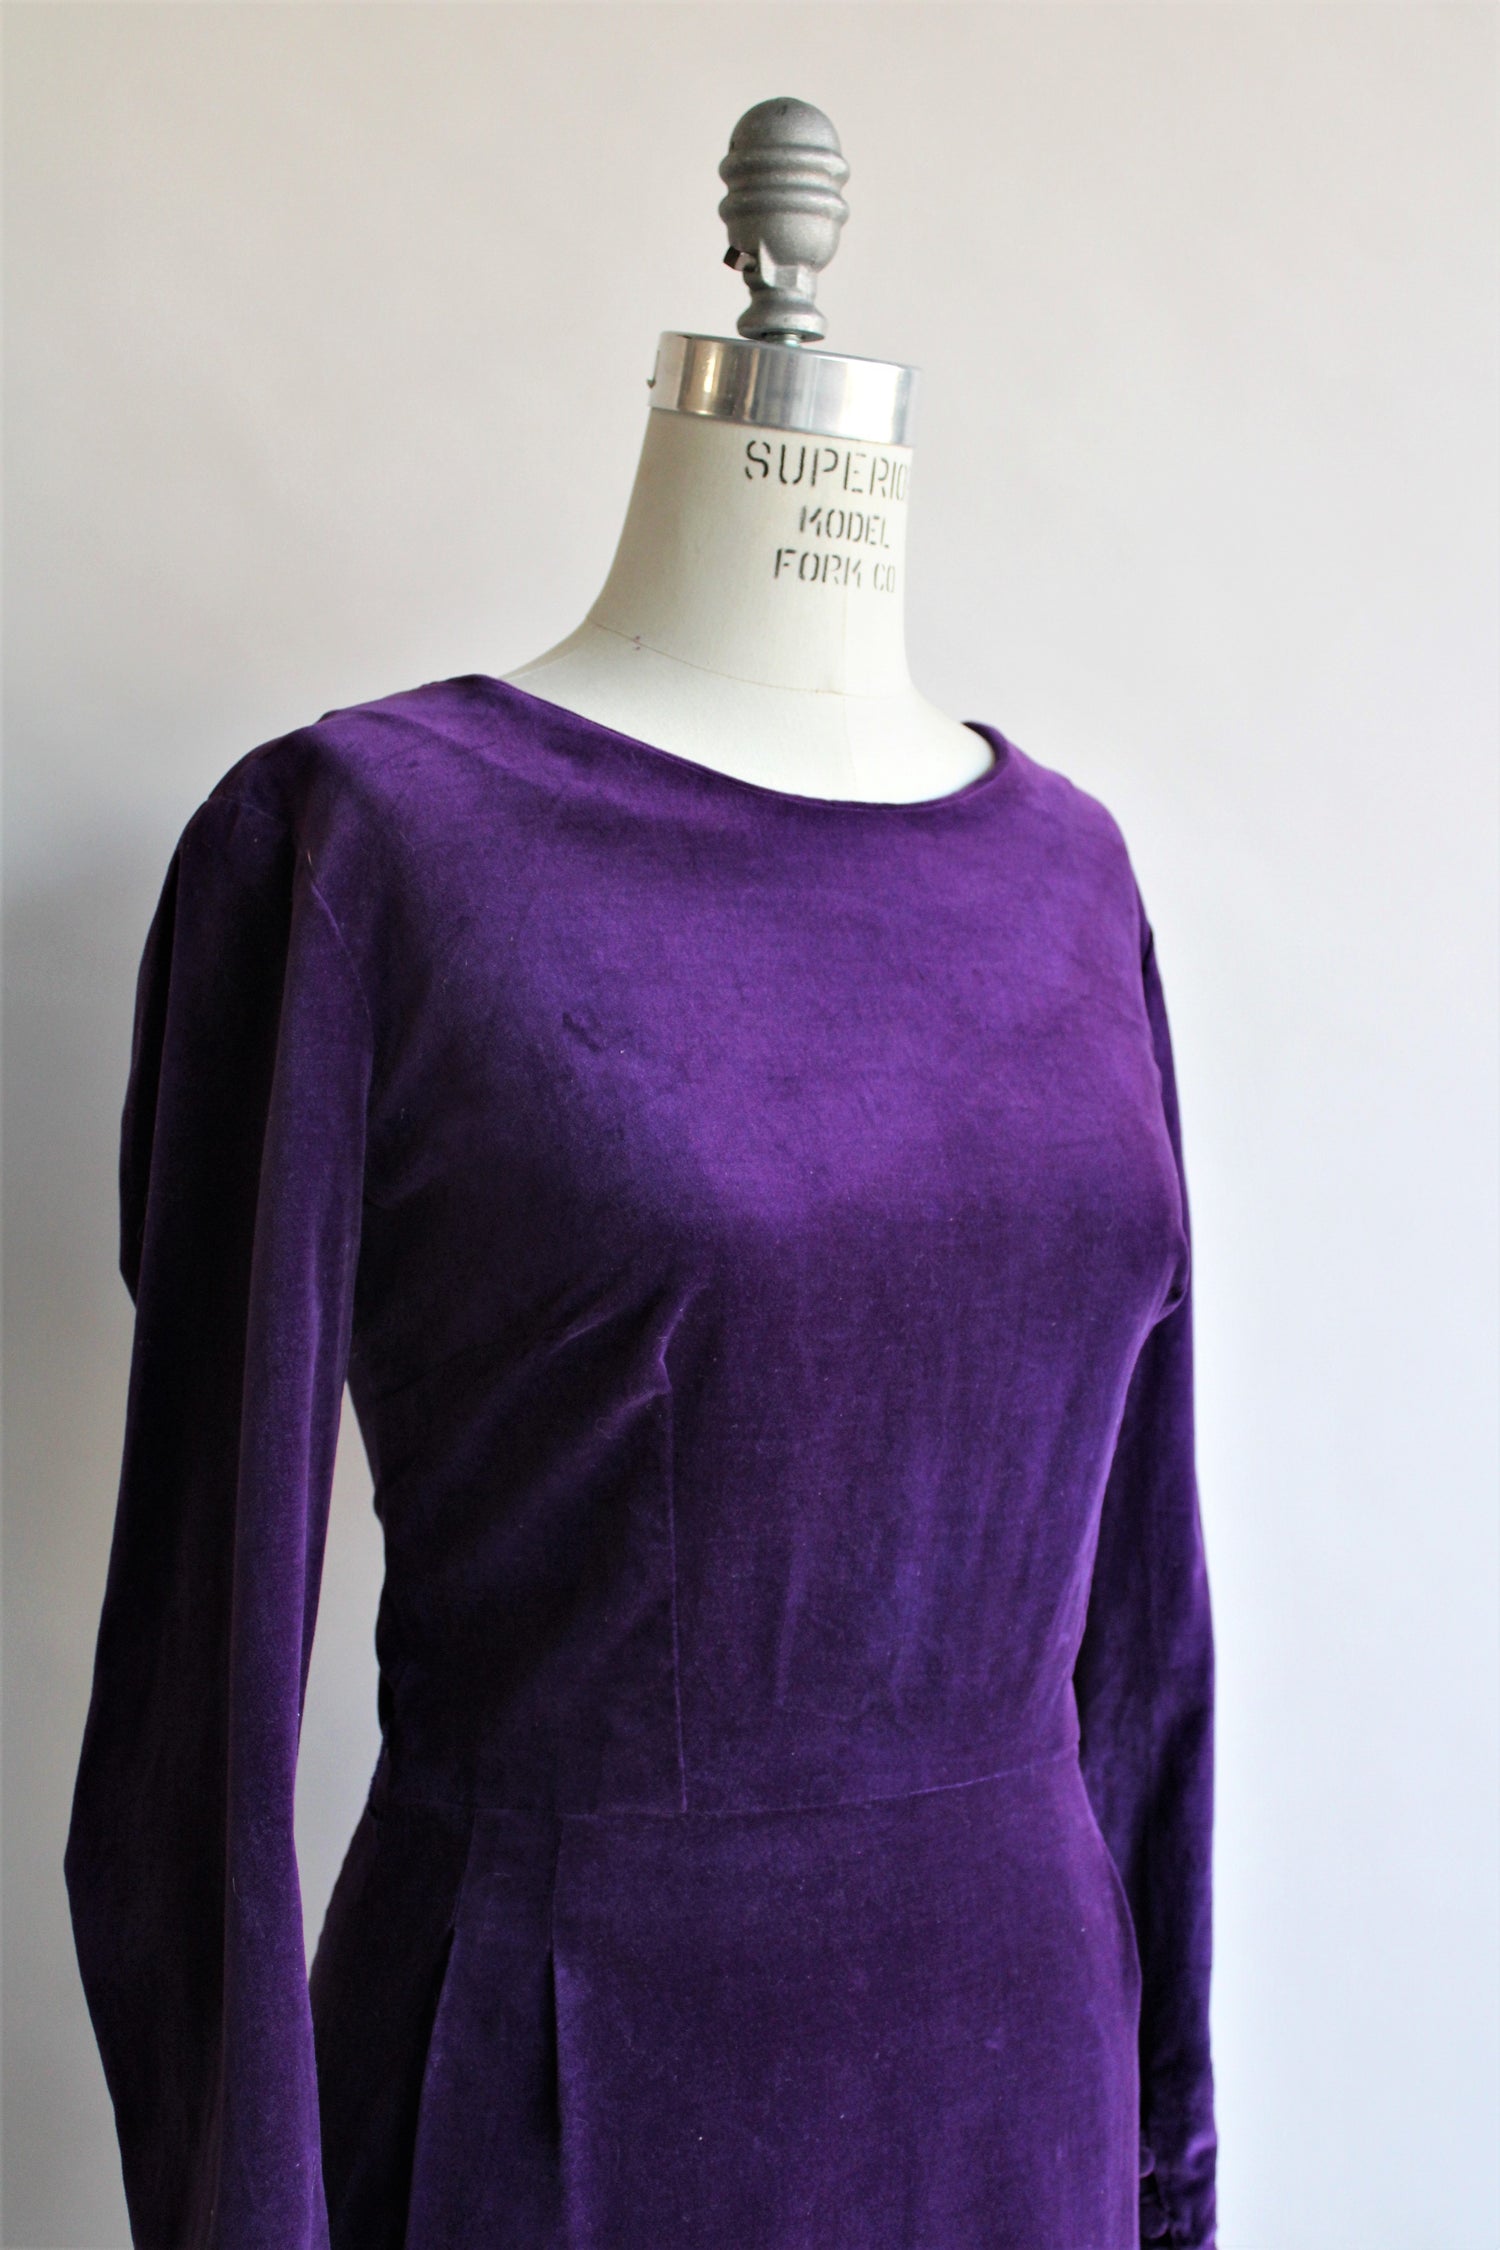 Vintage 1950s Purple Cotton Velvet Dress